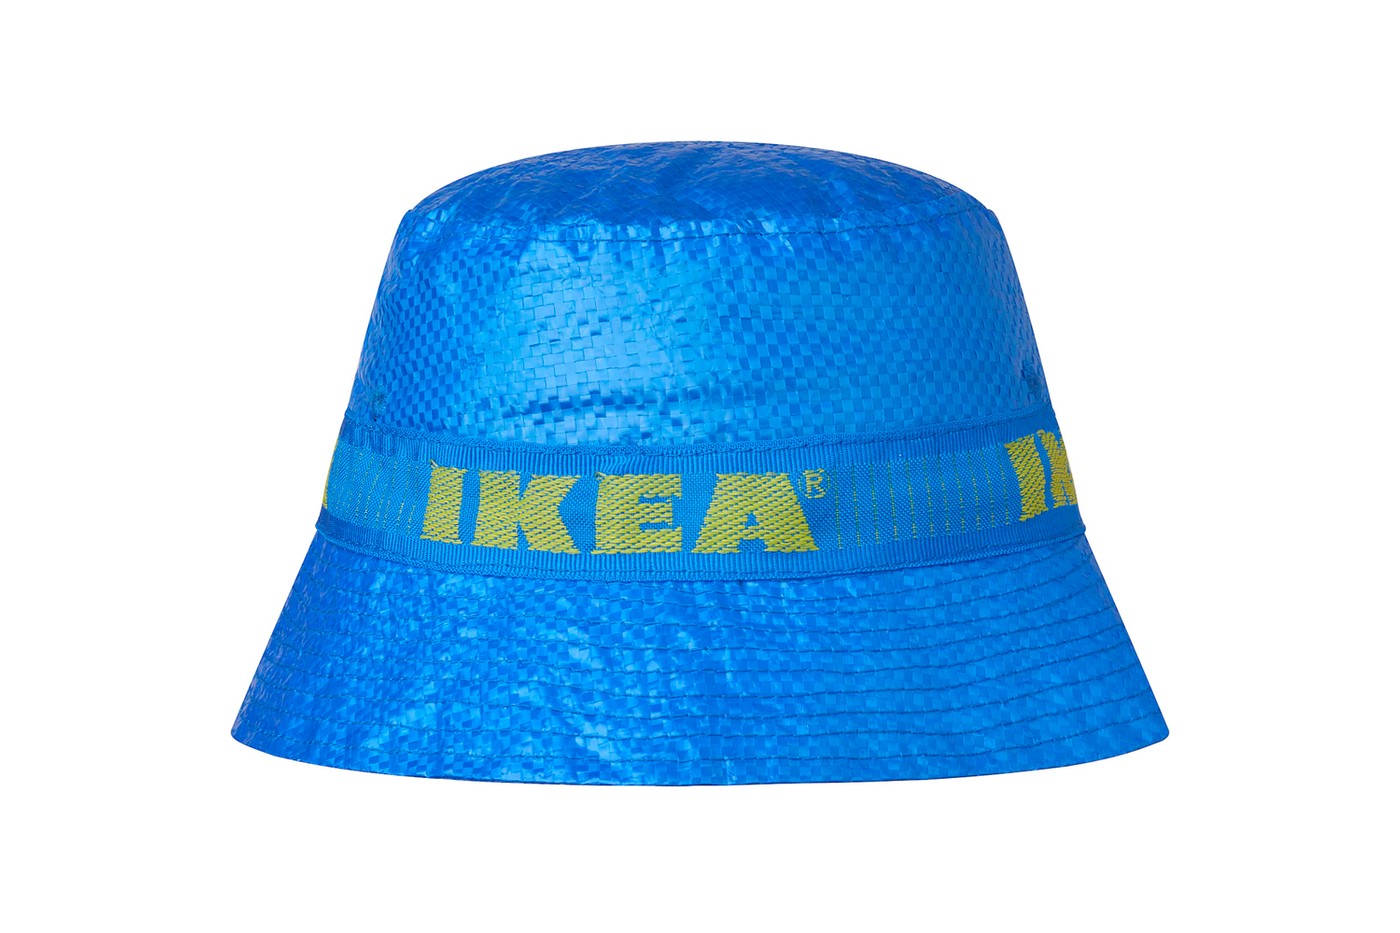 IKEA выпустила панамы по мотивам своей культовой синей сумки «Фракта» (фото 1)